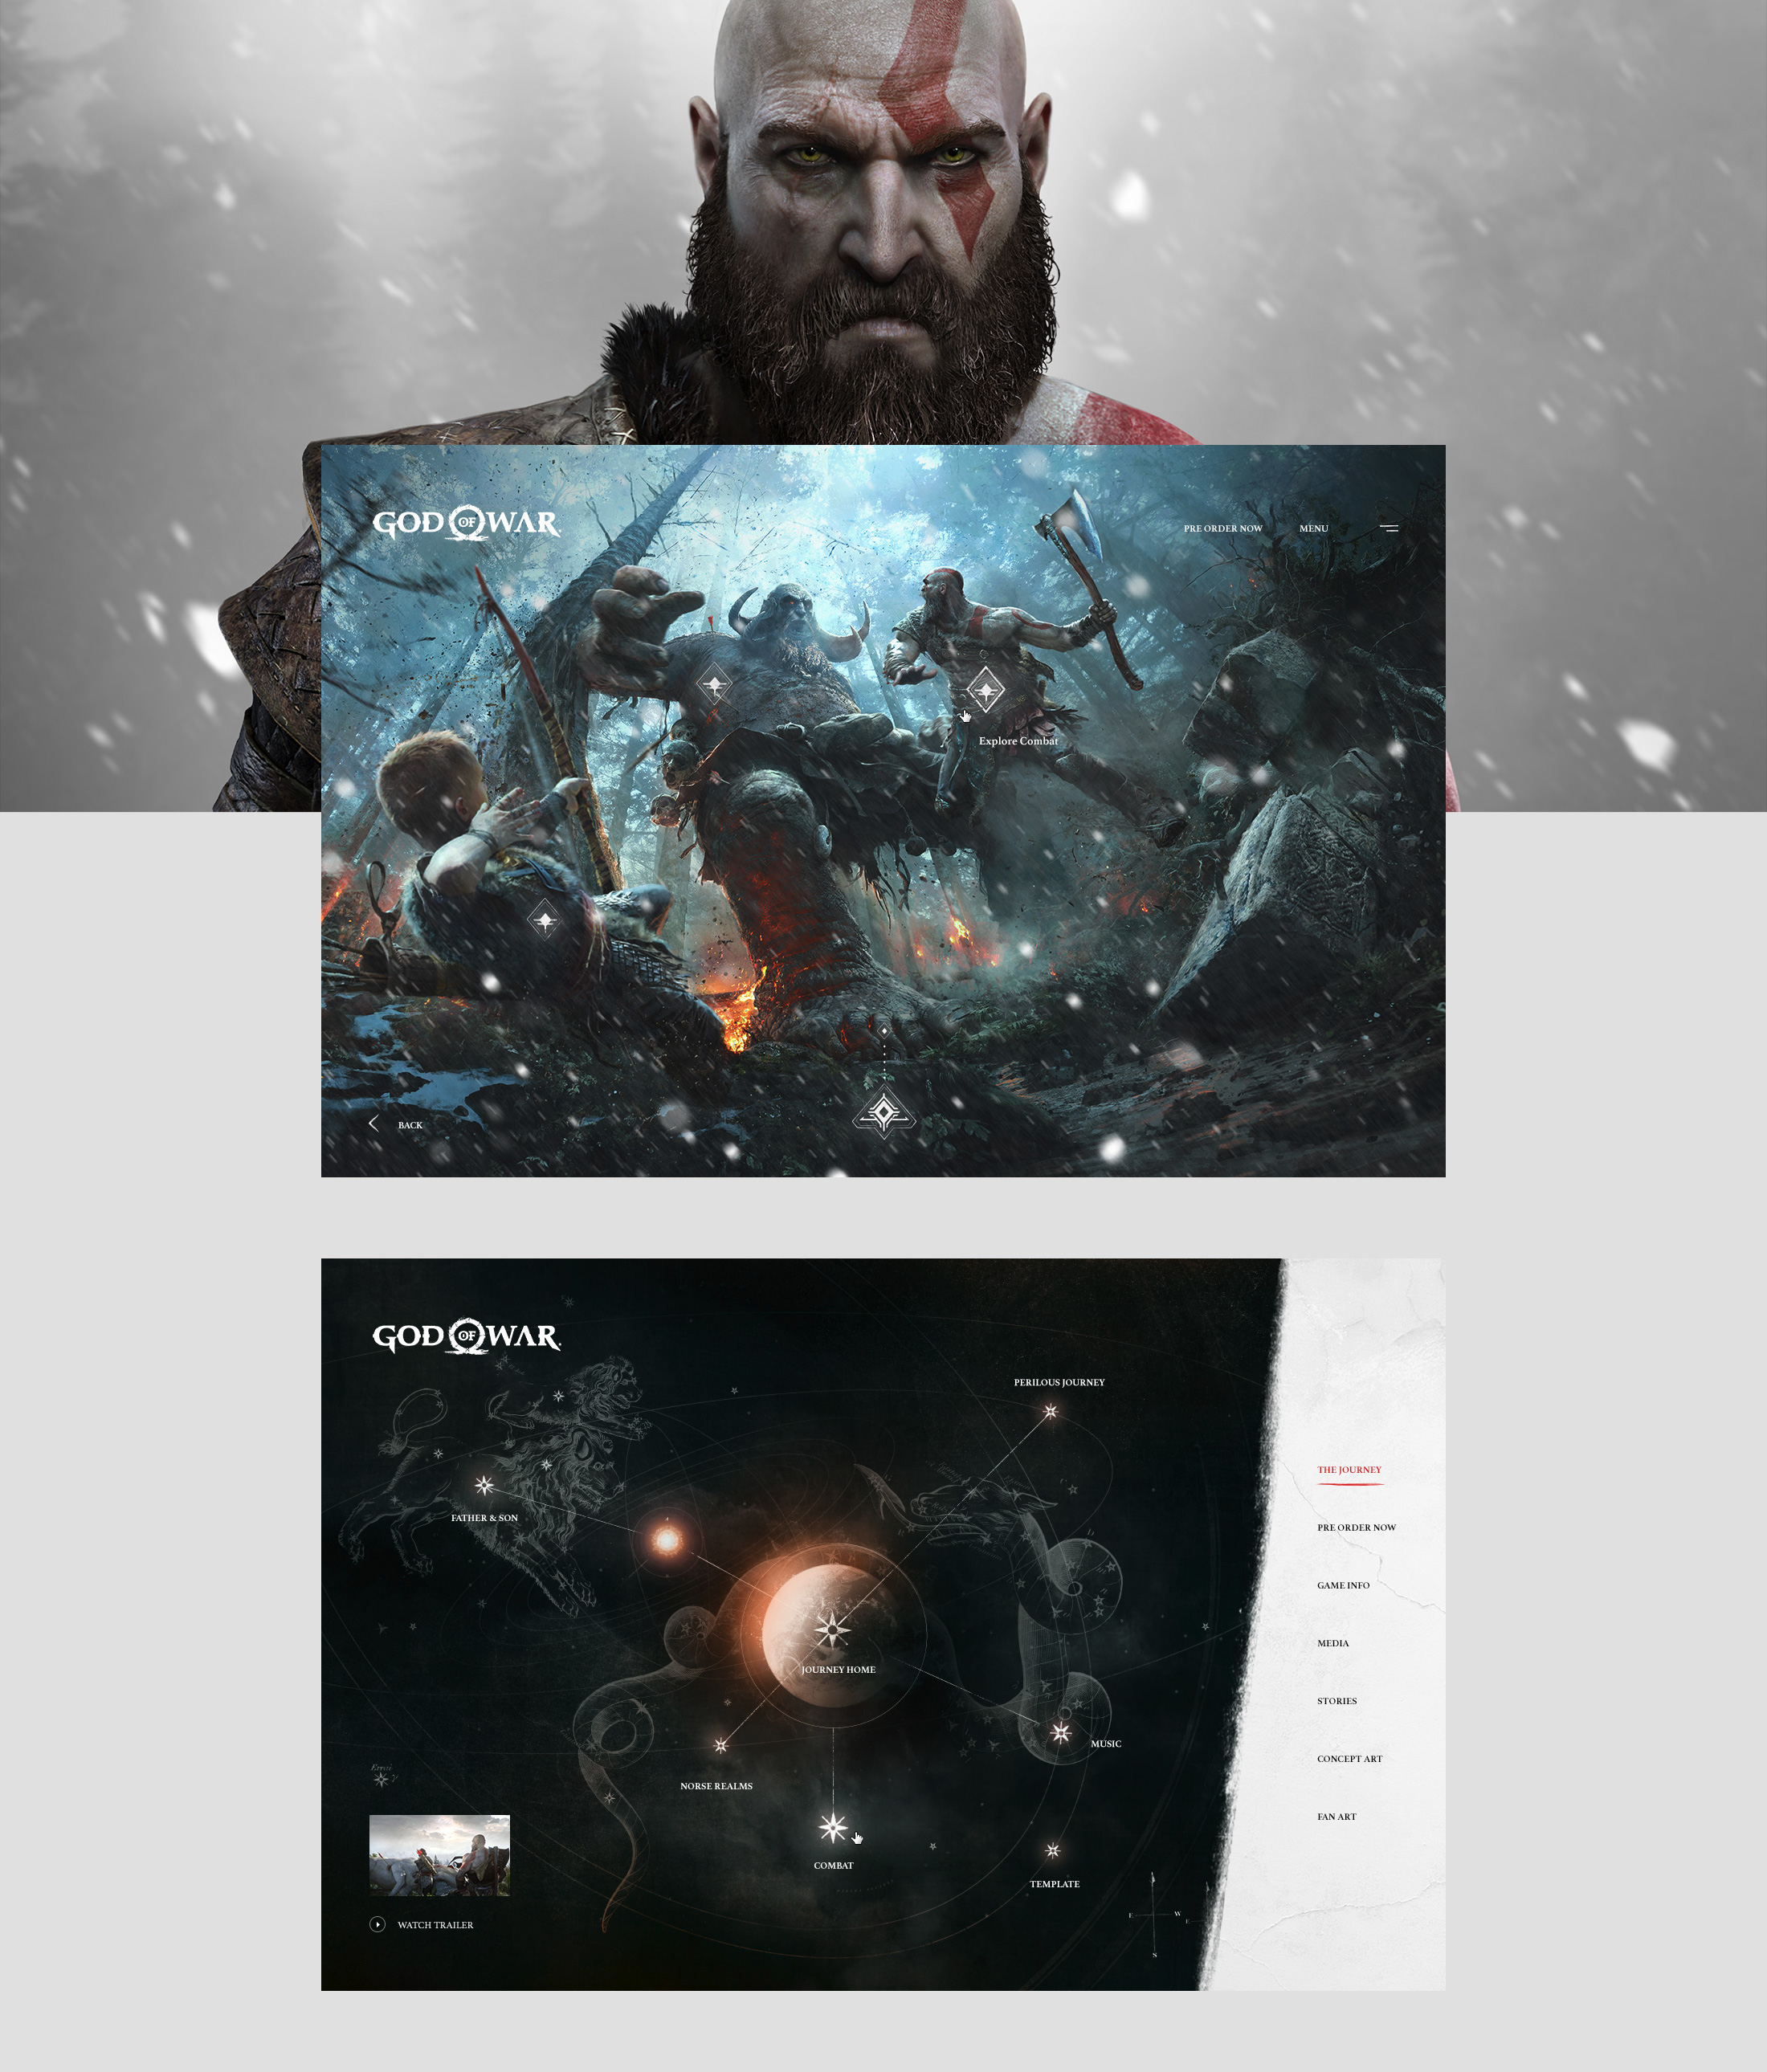 Web Design & UI/UX for the God of War 4 game